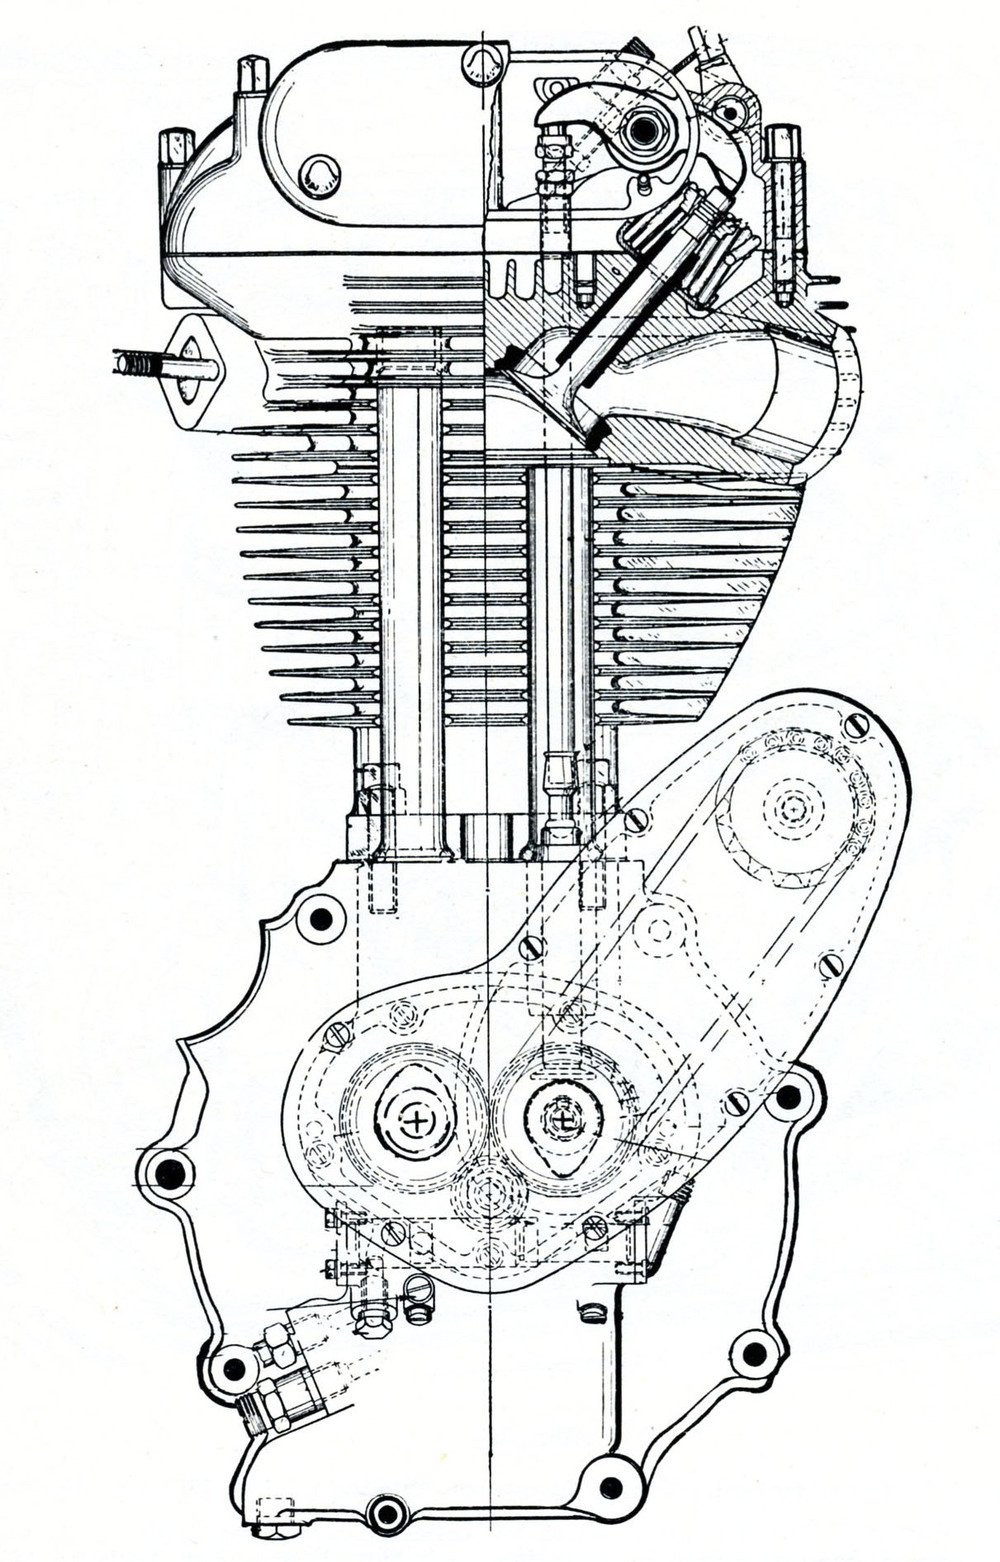 Il motore delle AJS/Matchless di 350 e 500 cm3 era caratterizzato tra l&rsquo;altro dall&rsquo;impiego di bilancieri realizzati in tre parti. I due alberi a camme collocati sulla destra del basamento agivano su punterie a piattello